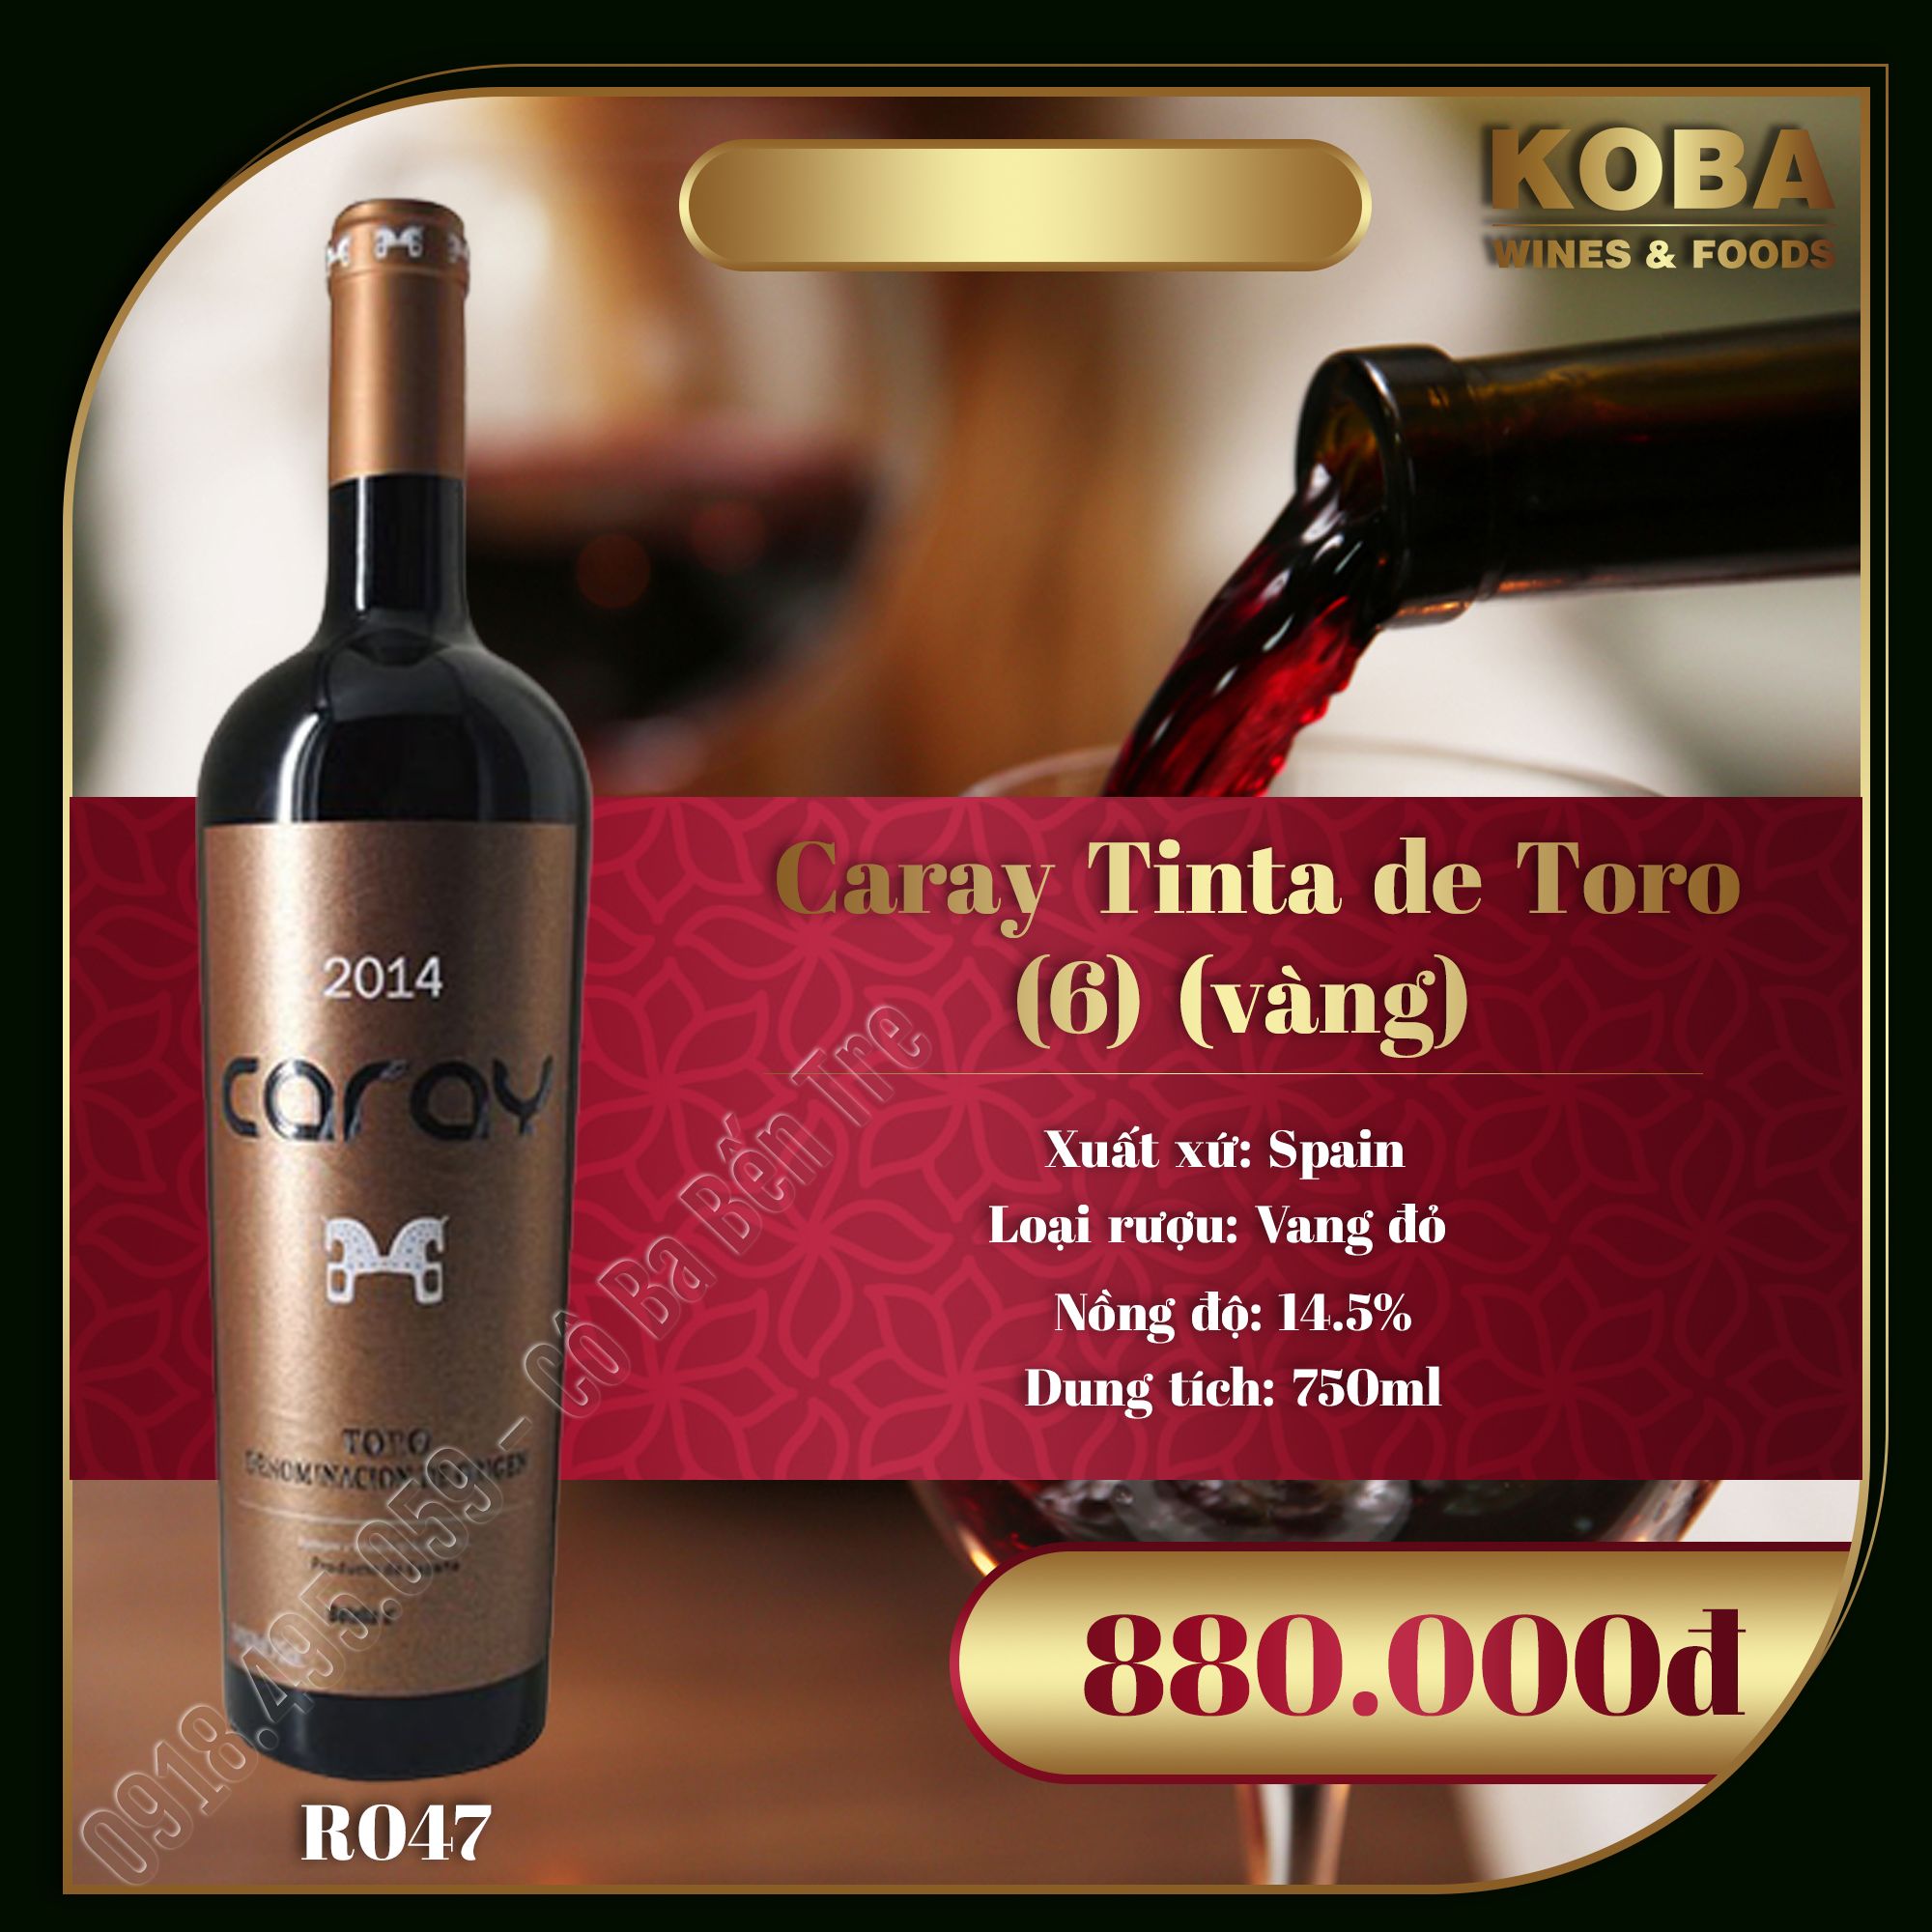 Rượu Vang Đỏ Spain - Caray Tinta de Toro 2014 (6) (Vàng) - 14.5 độ